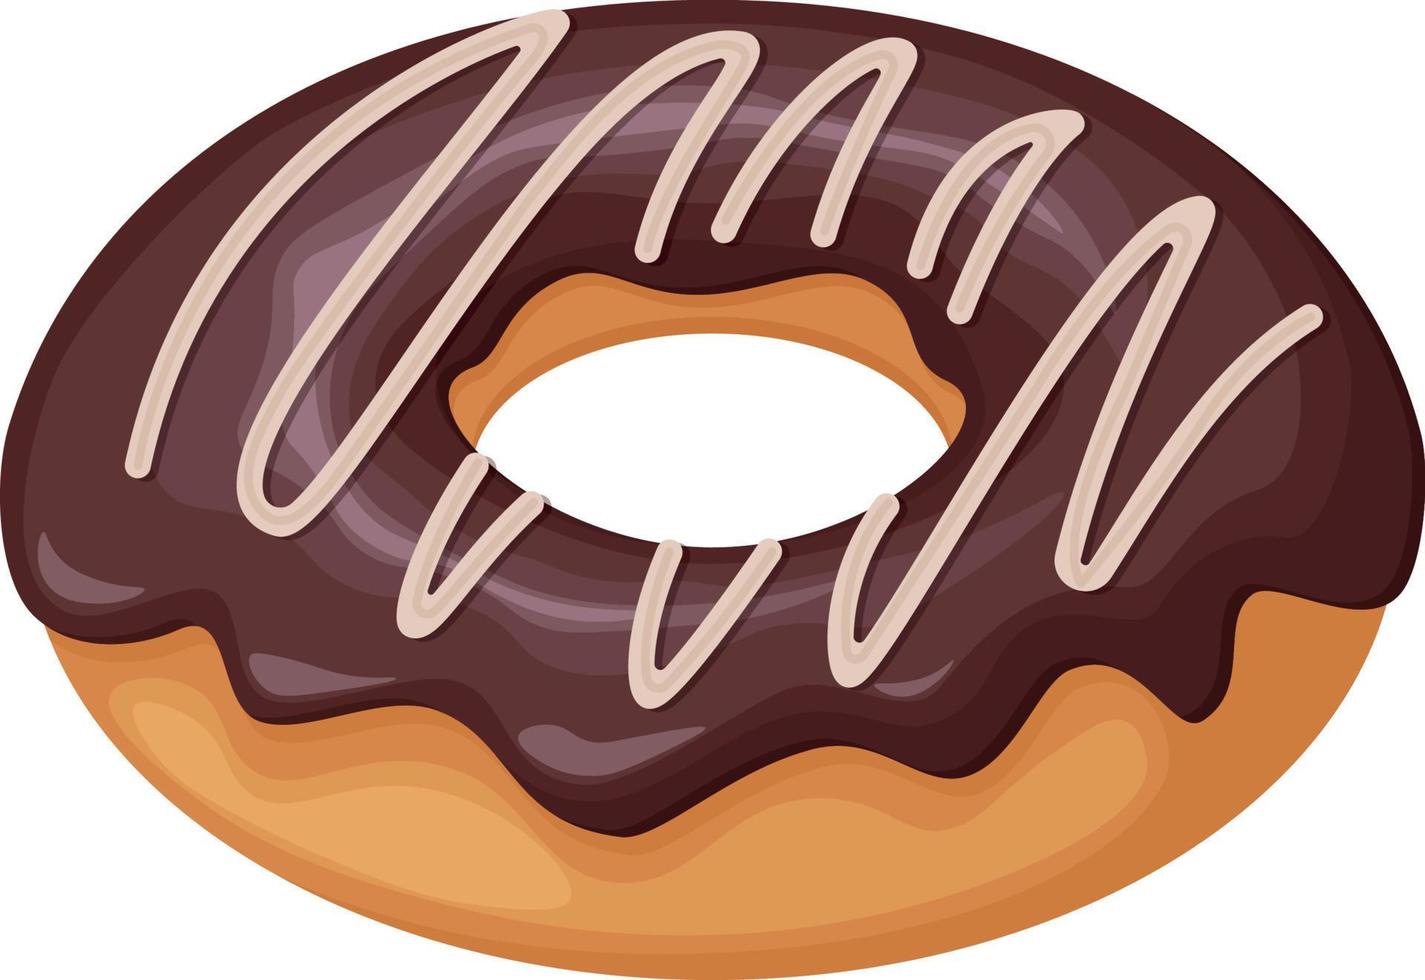 Donut. un beignet sucré arrosé de chocolat. beignet au chocolat. dessert sucré. illustration vectorielle isolée sur fond blanc vecteur